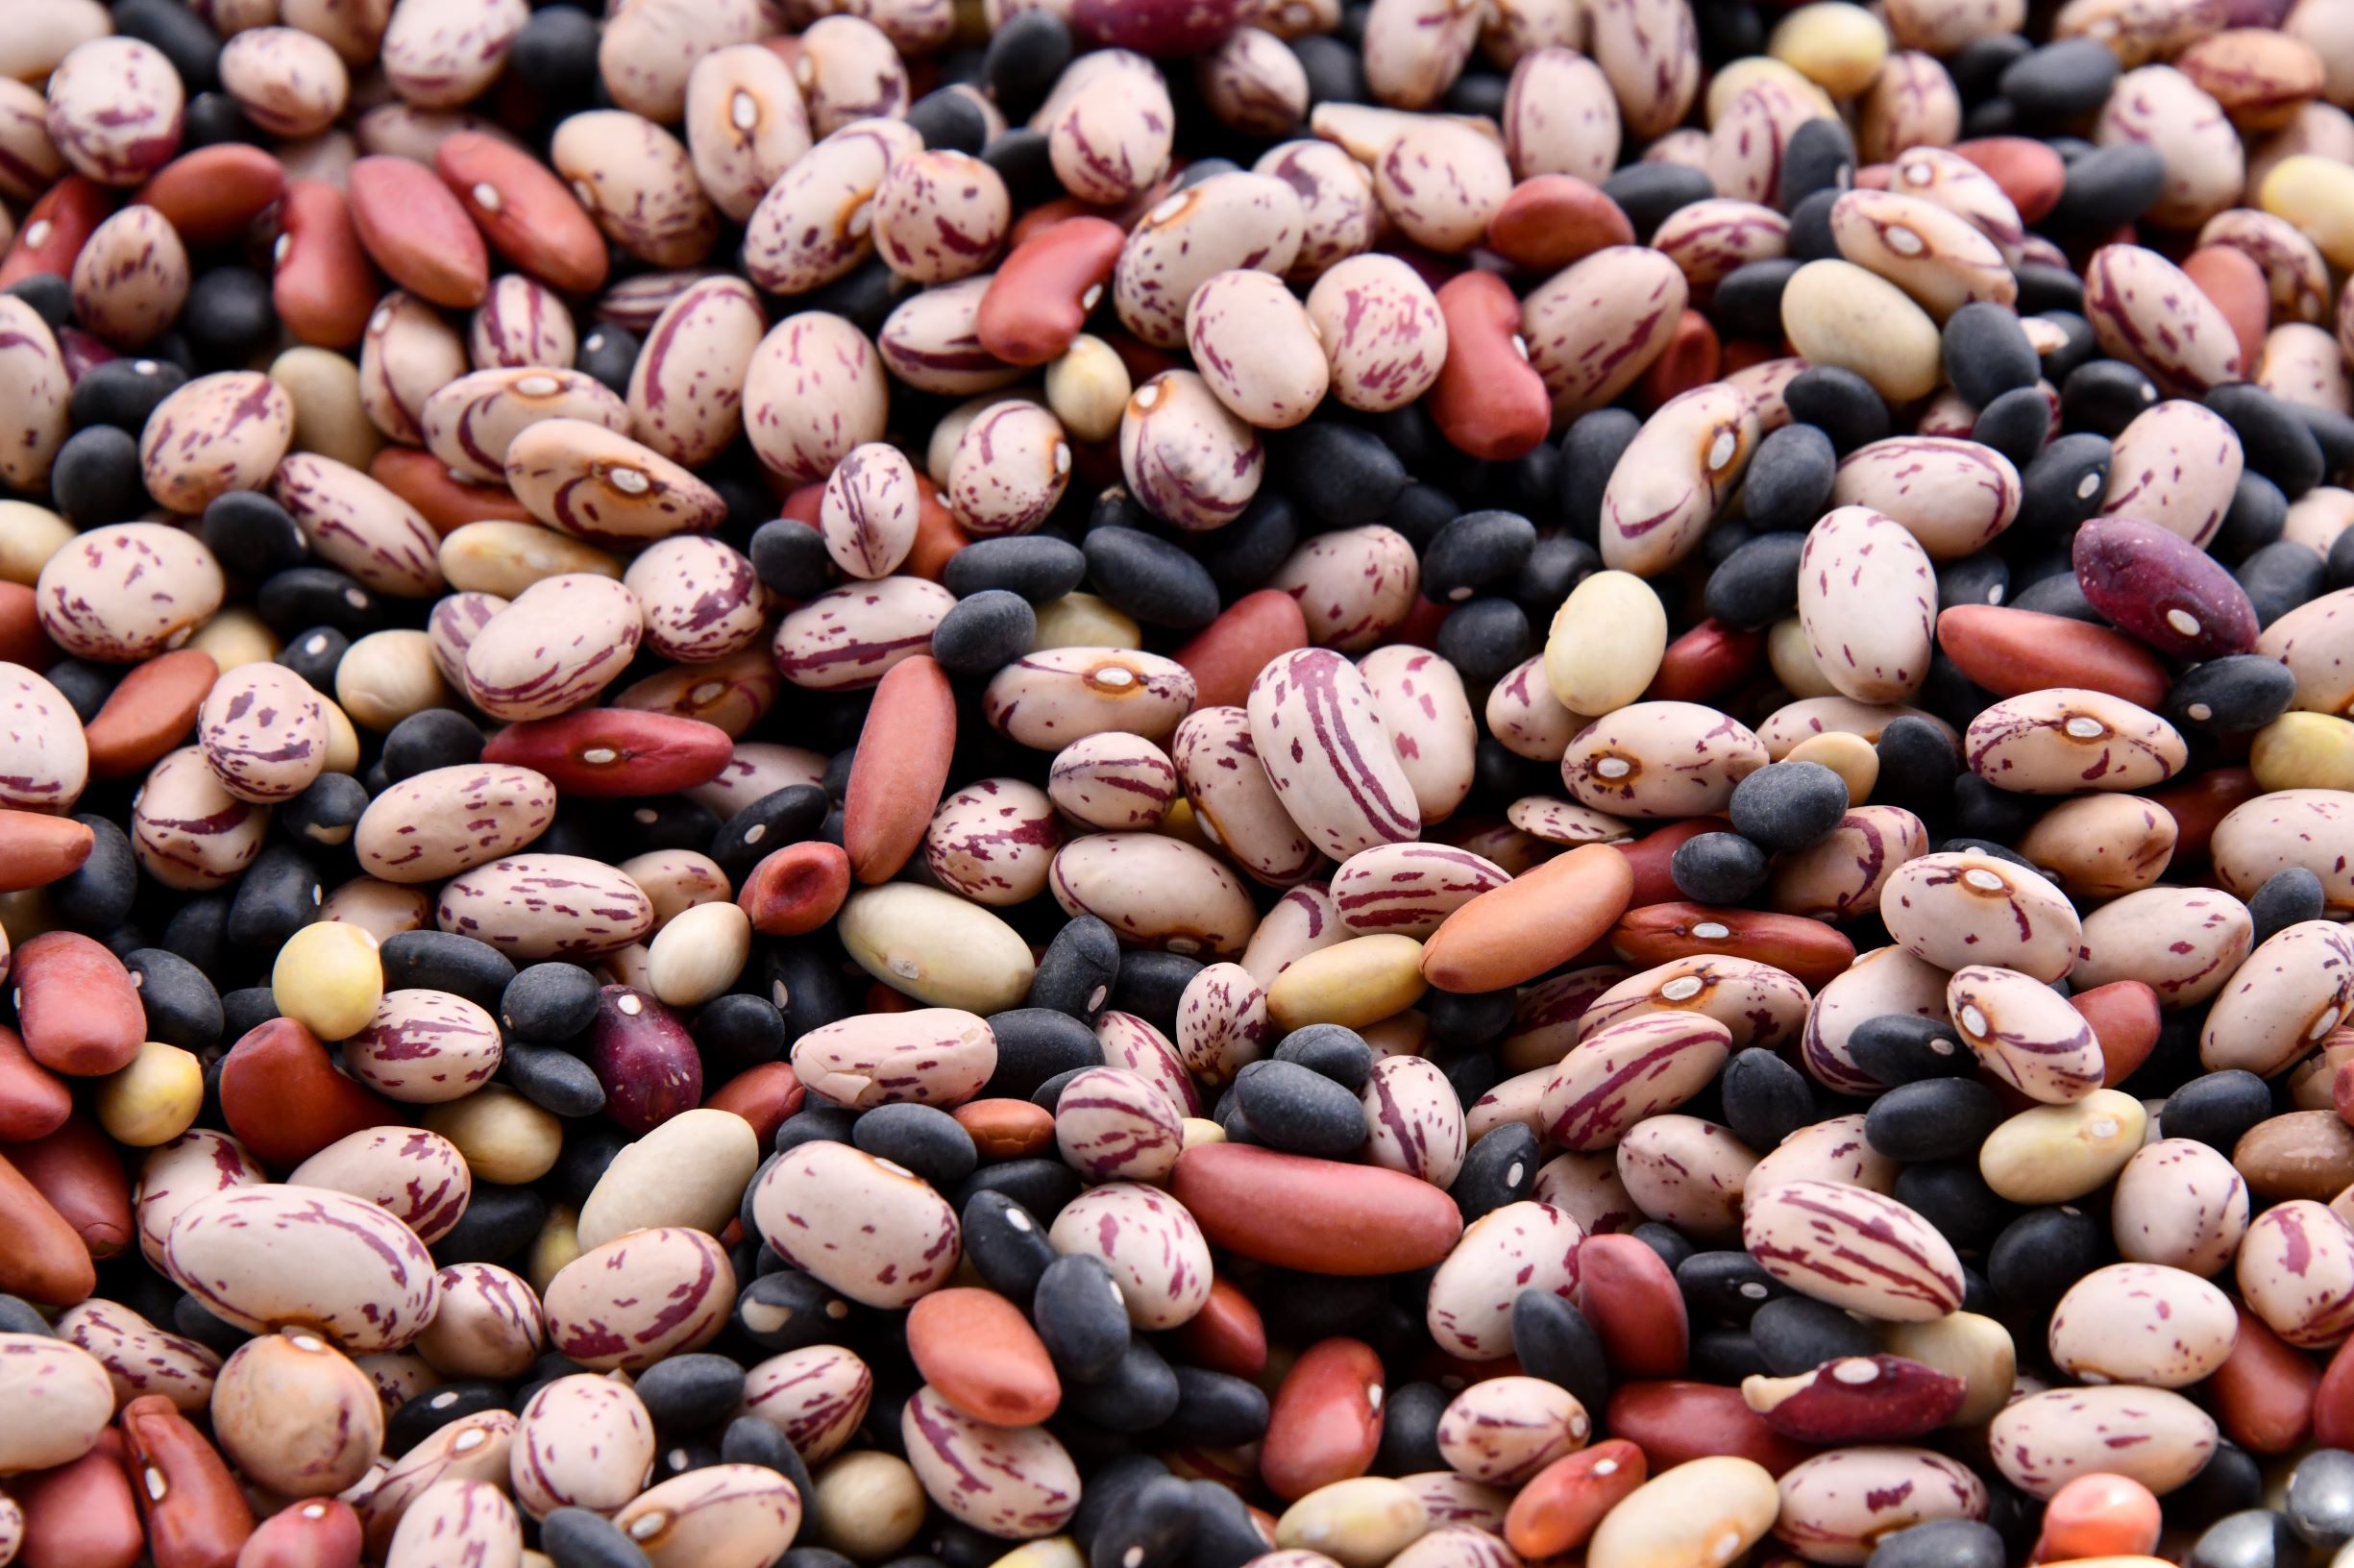 Bean seeds